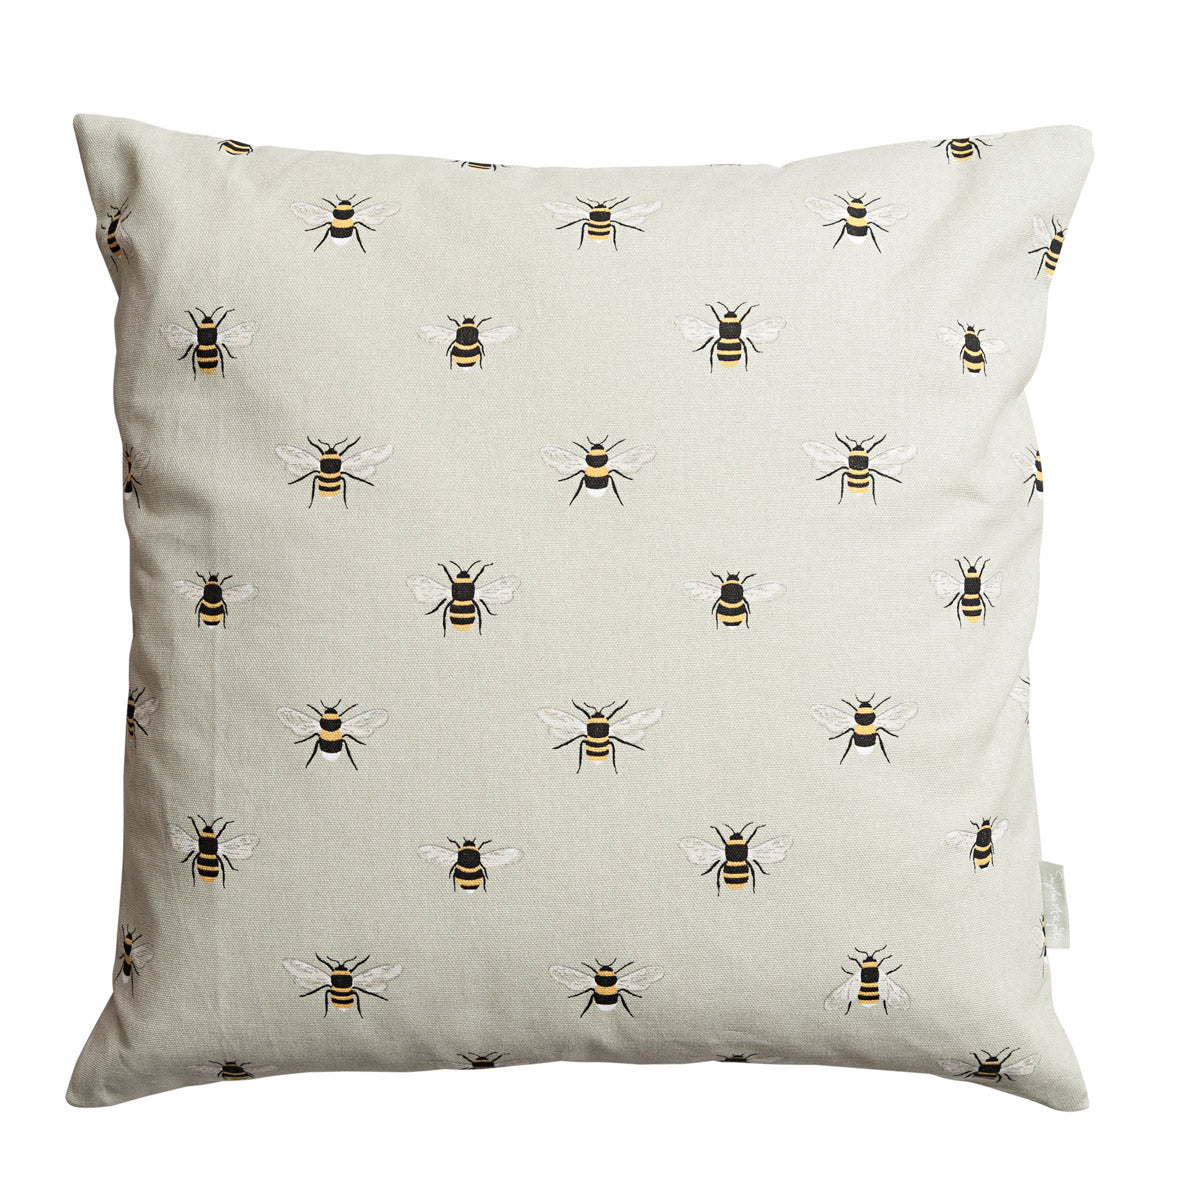 Bees Cushion - 45cm x 45cm